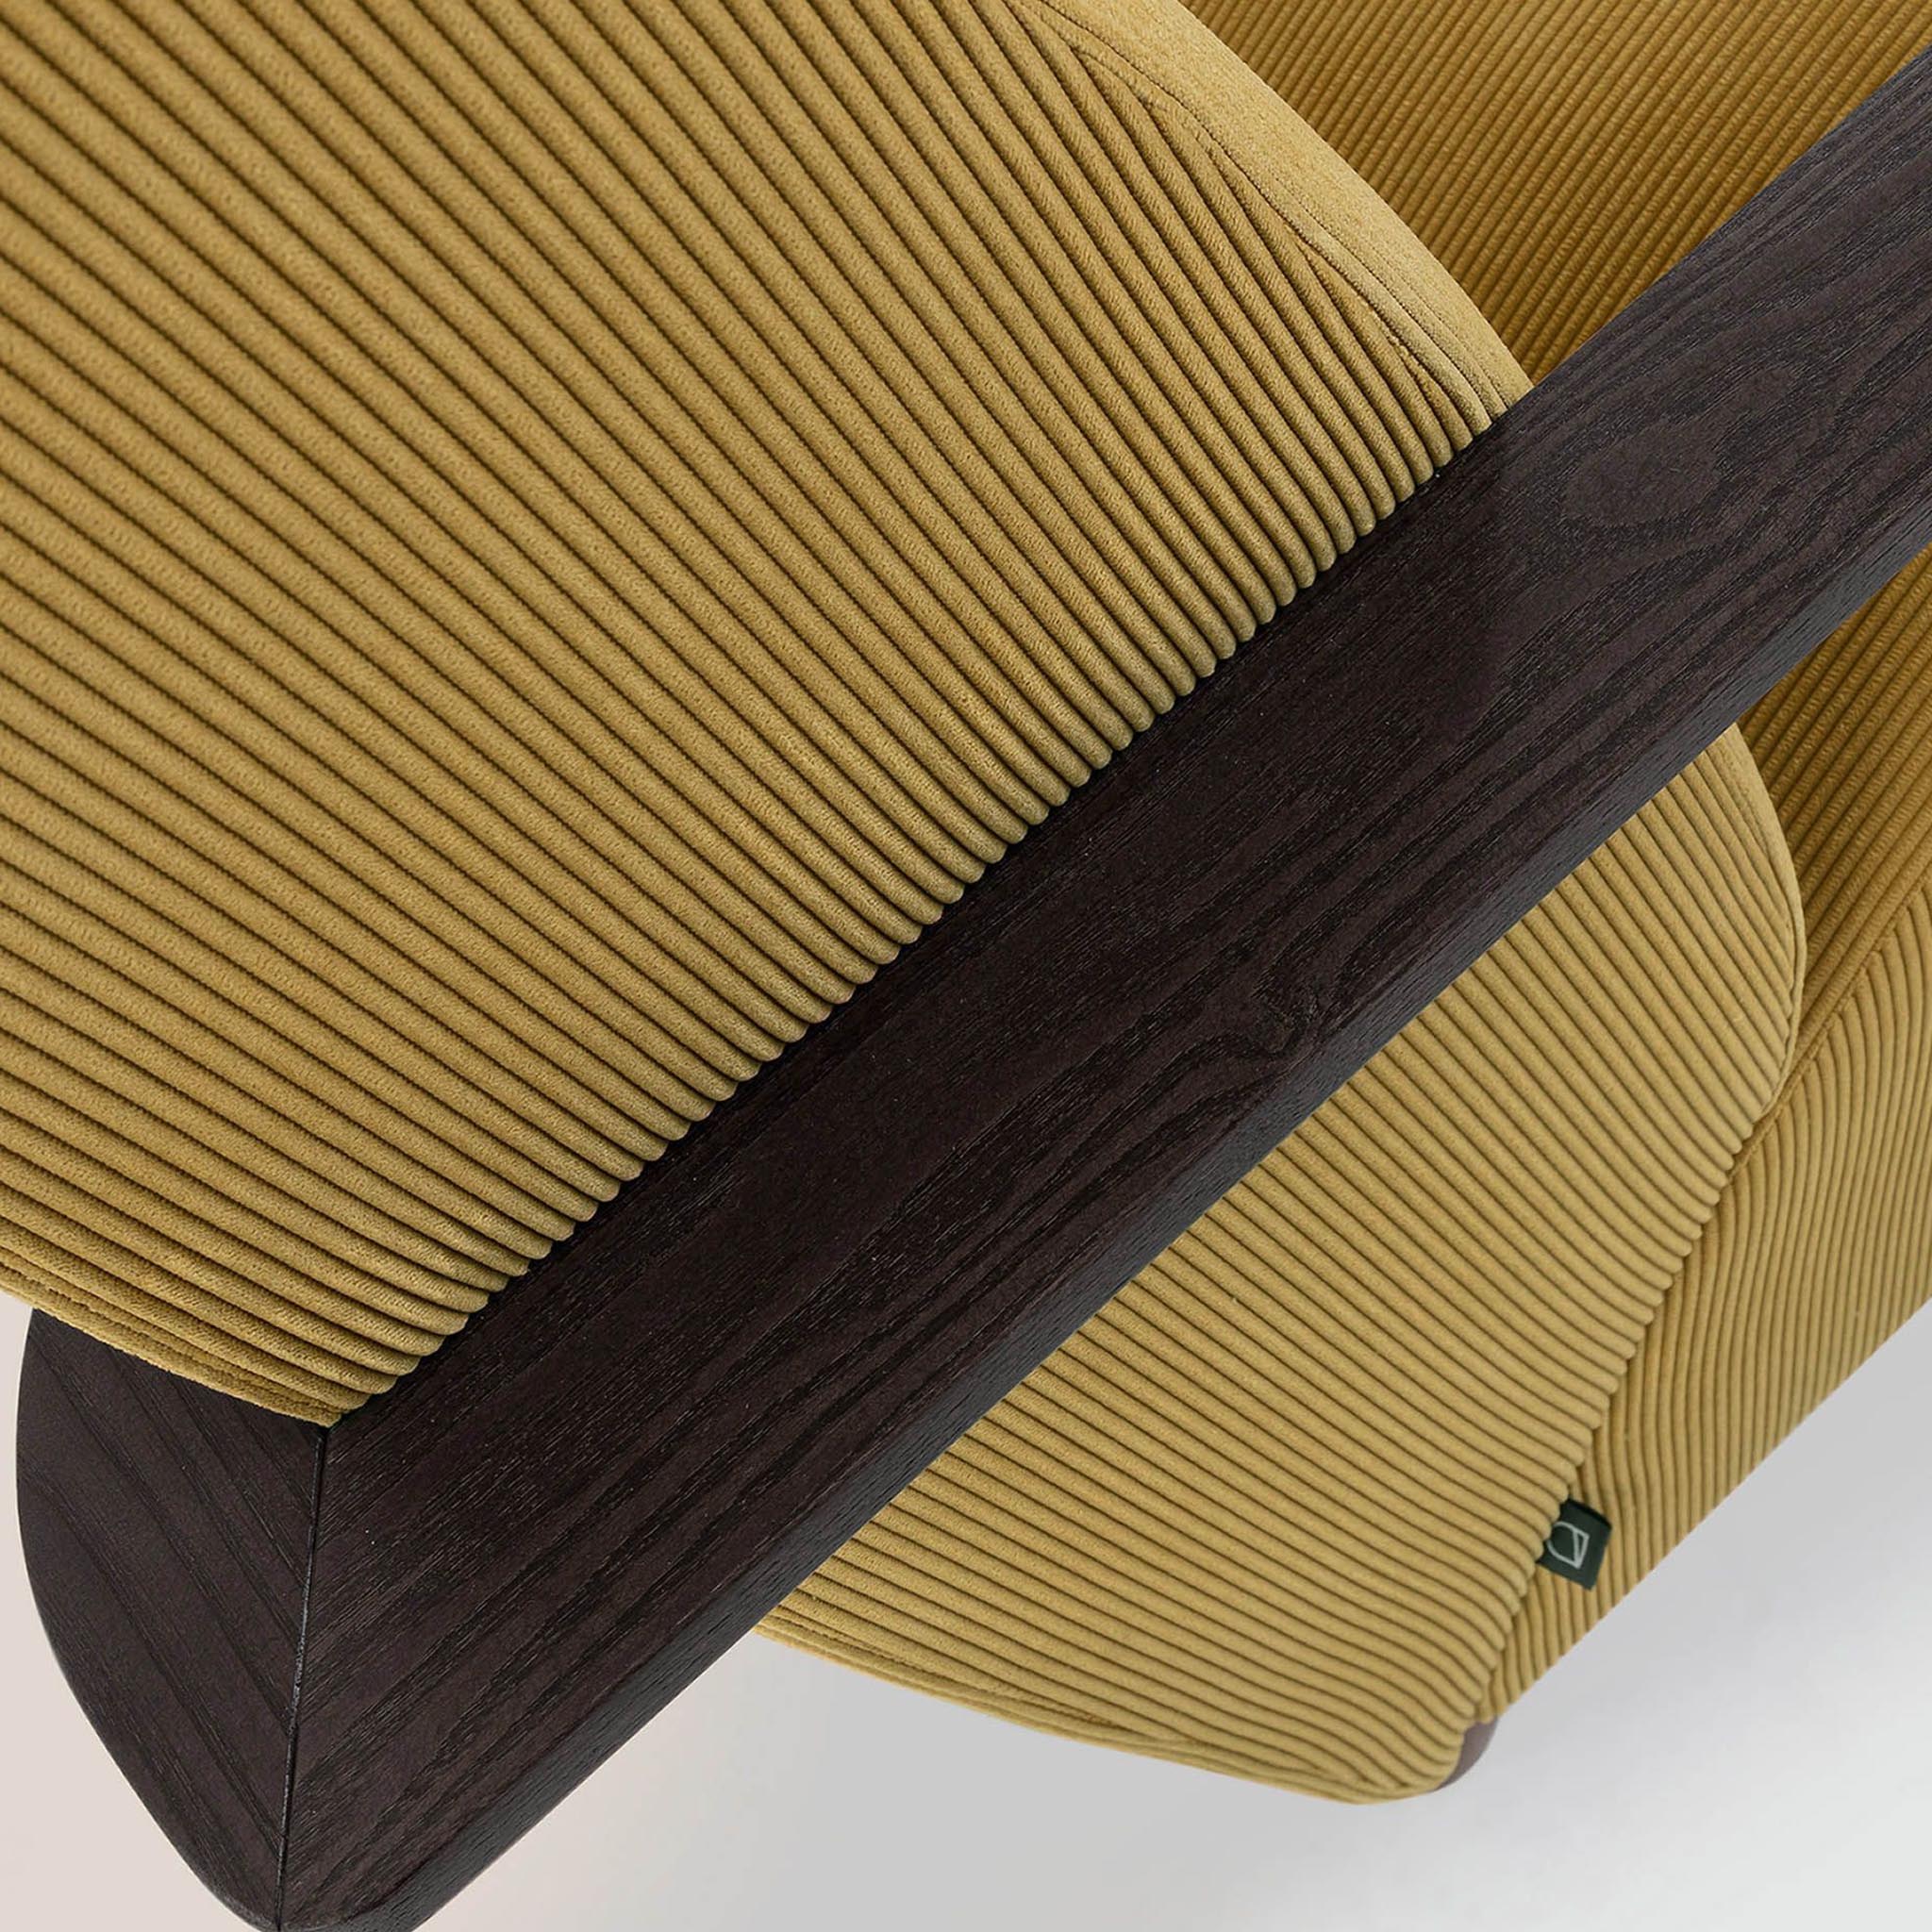 Kave Home Sessel Meghan - SKU #S517PN81 in Farbe Senfgelb - Beine in Dunkelbraun - Holzmaterial